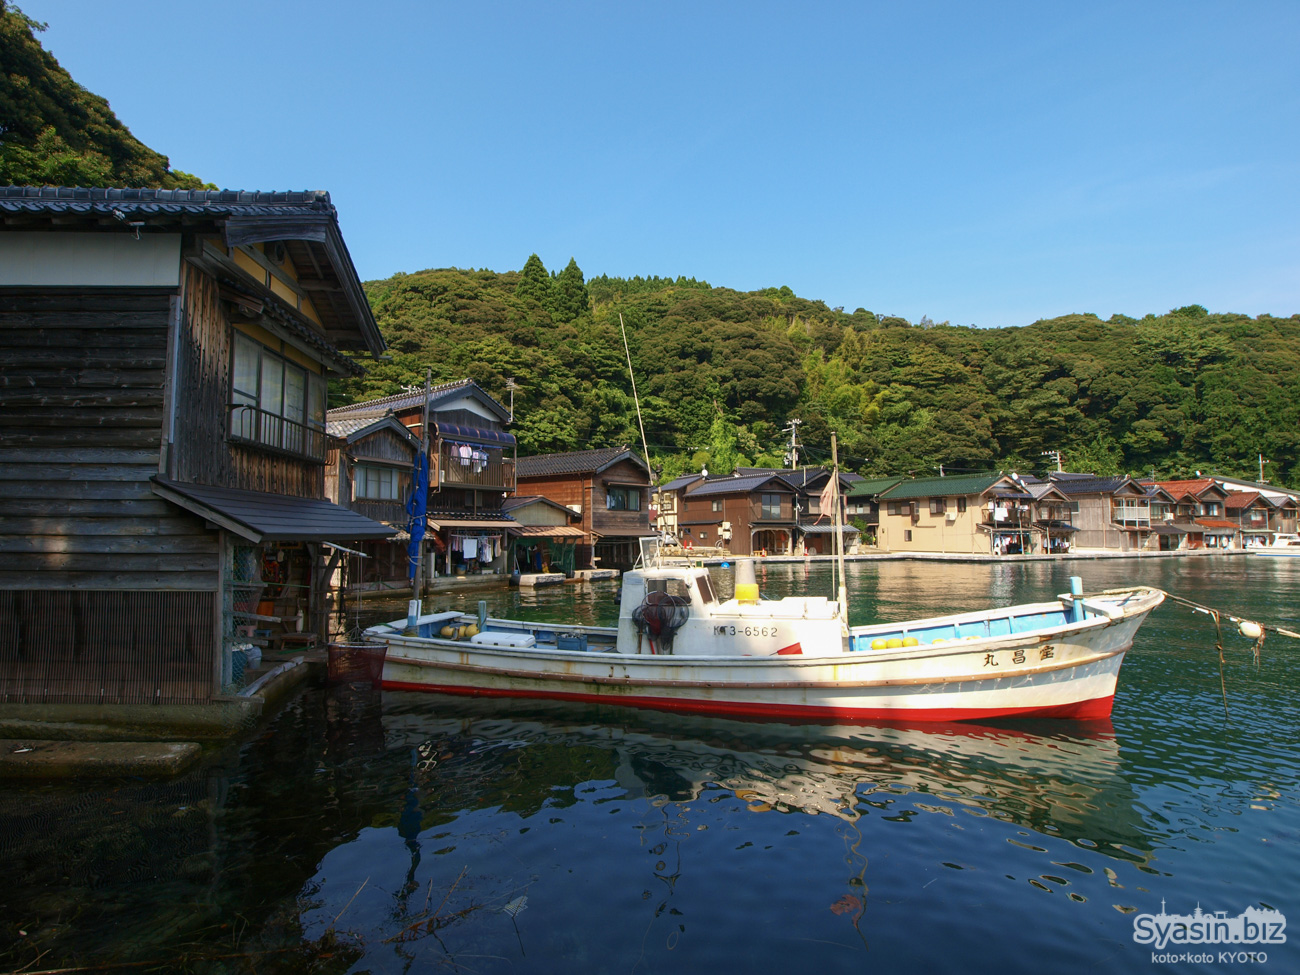 伊根の舟屋 – 遊覧船で伊根湾めぐりと絶景の道の駅